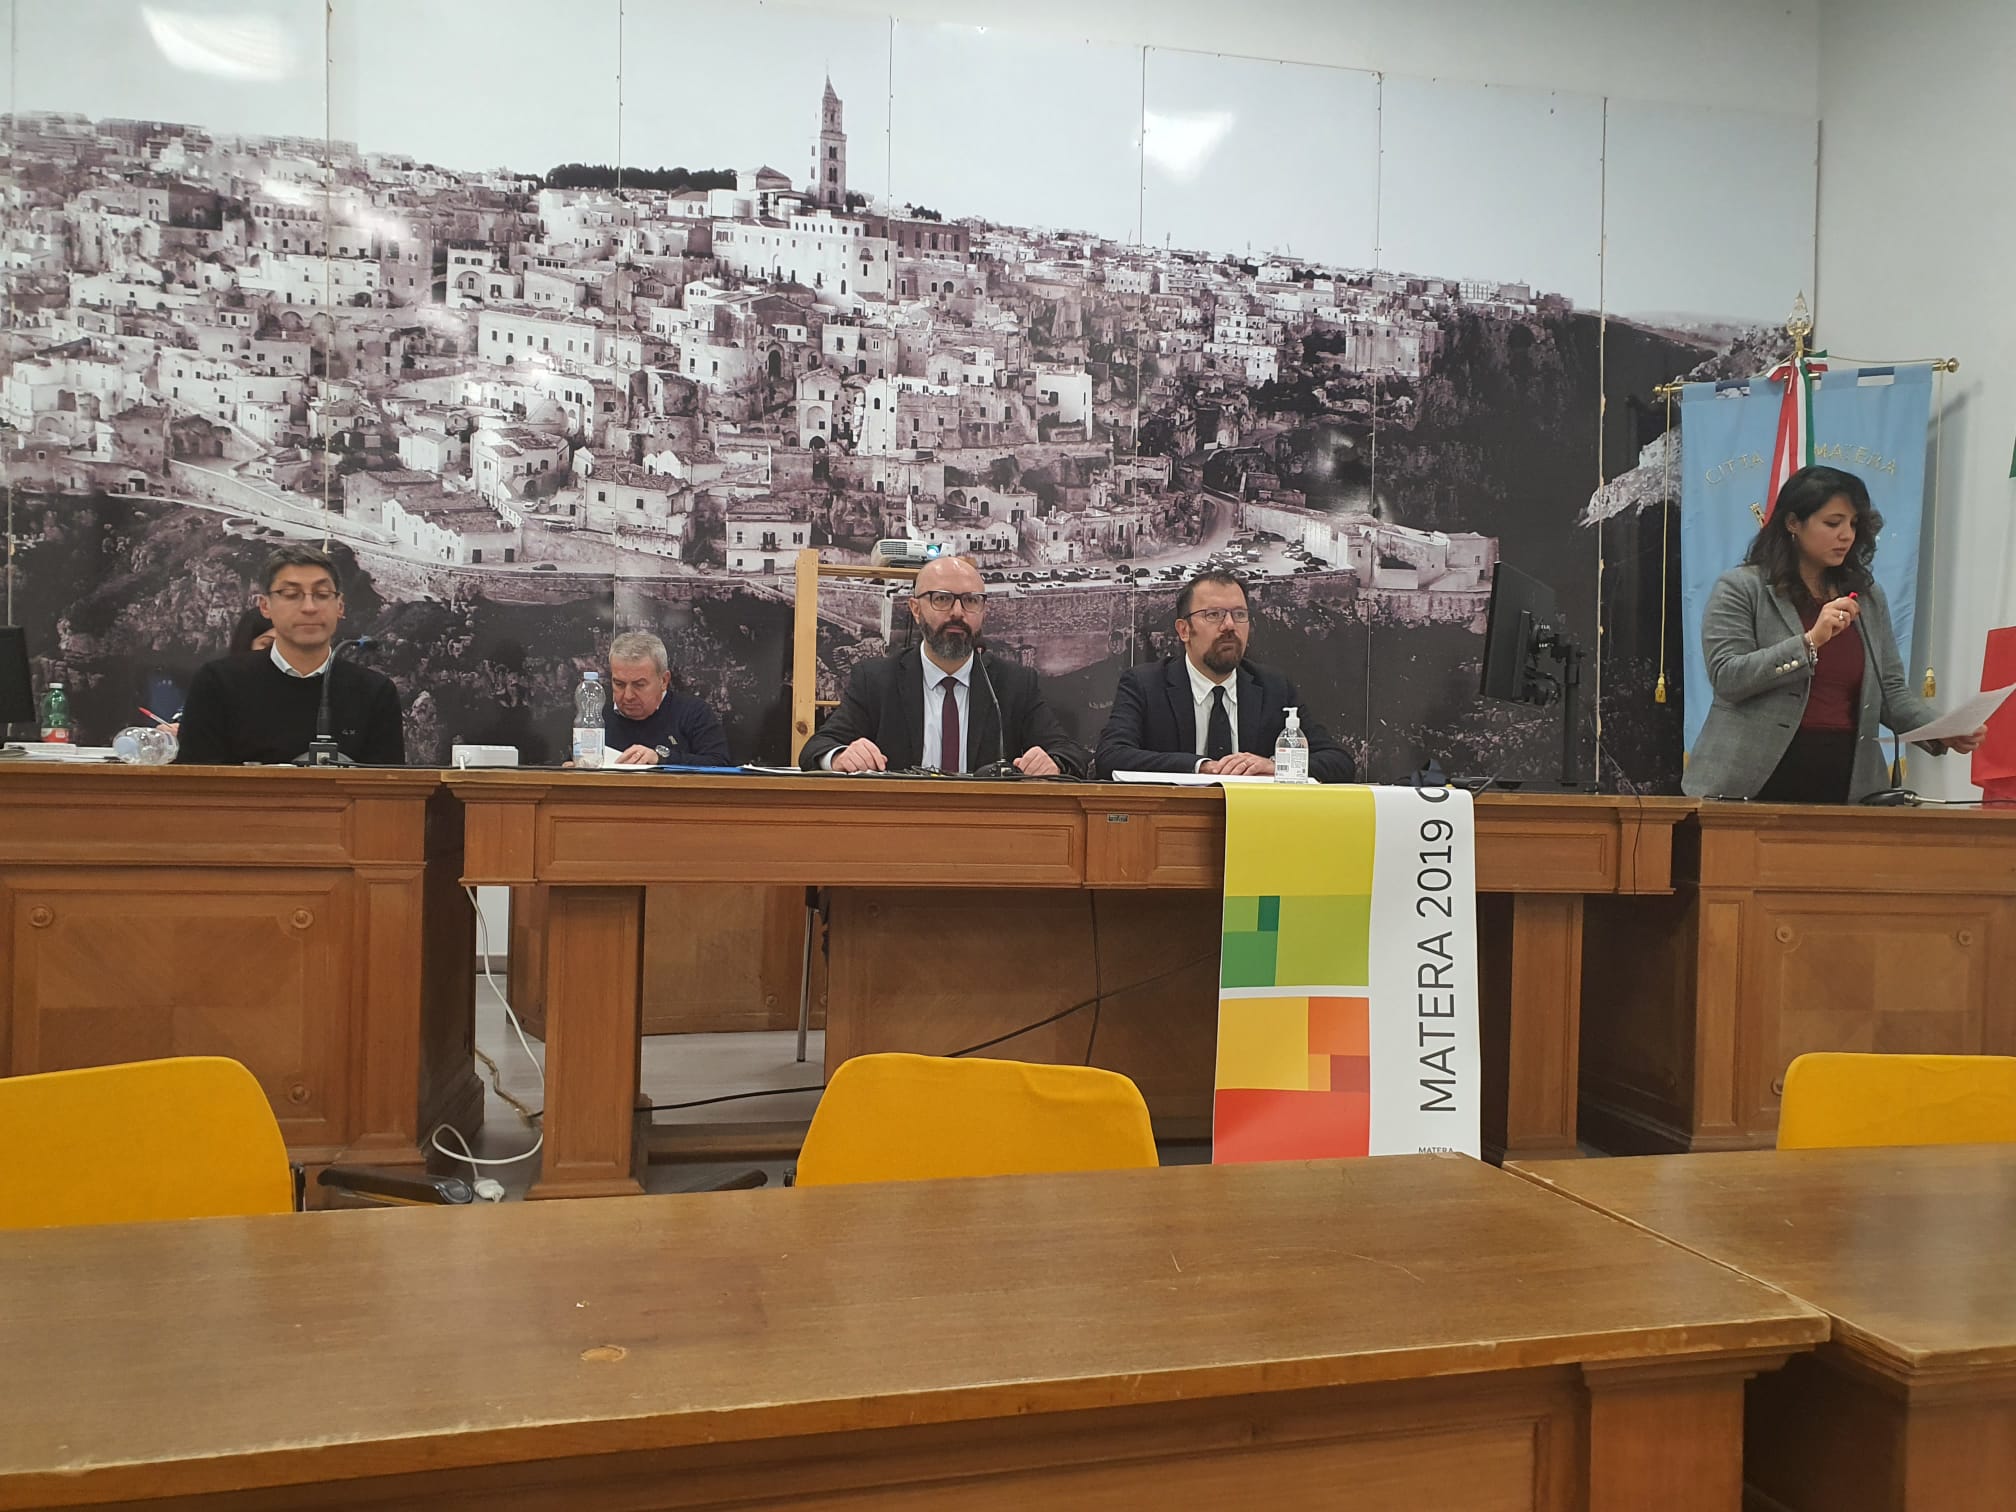 Fondazione Matera Basilicata 2019: il Consiglio Comunale approva una mozione per impegnare il sindaco a difendere il protagonismo della città nell’assetto della nuova governance